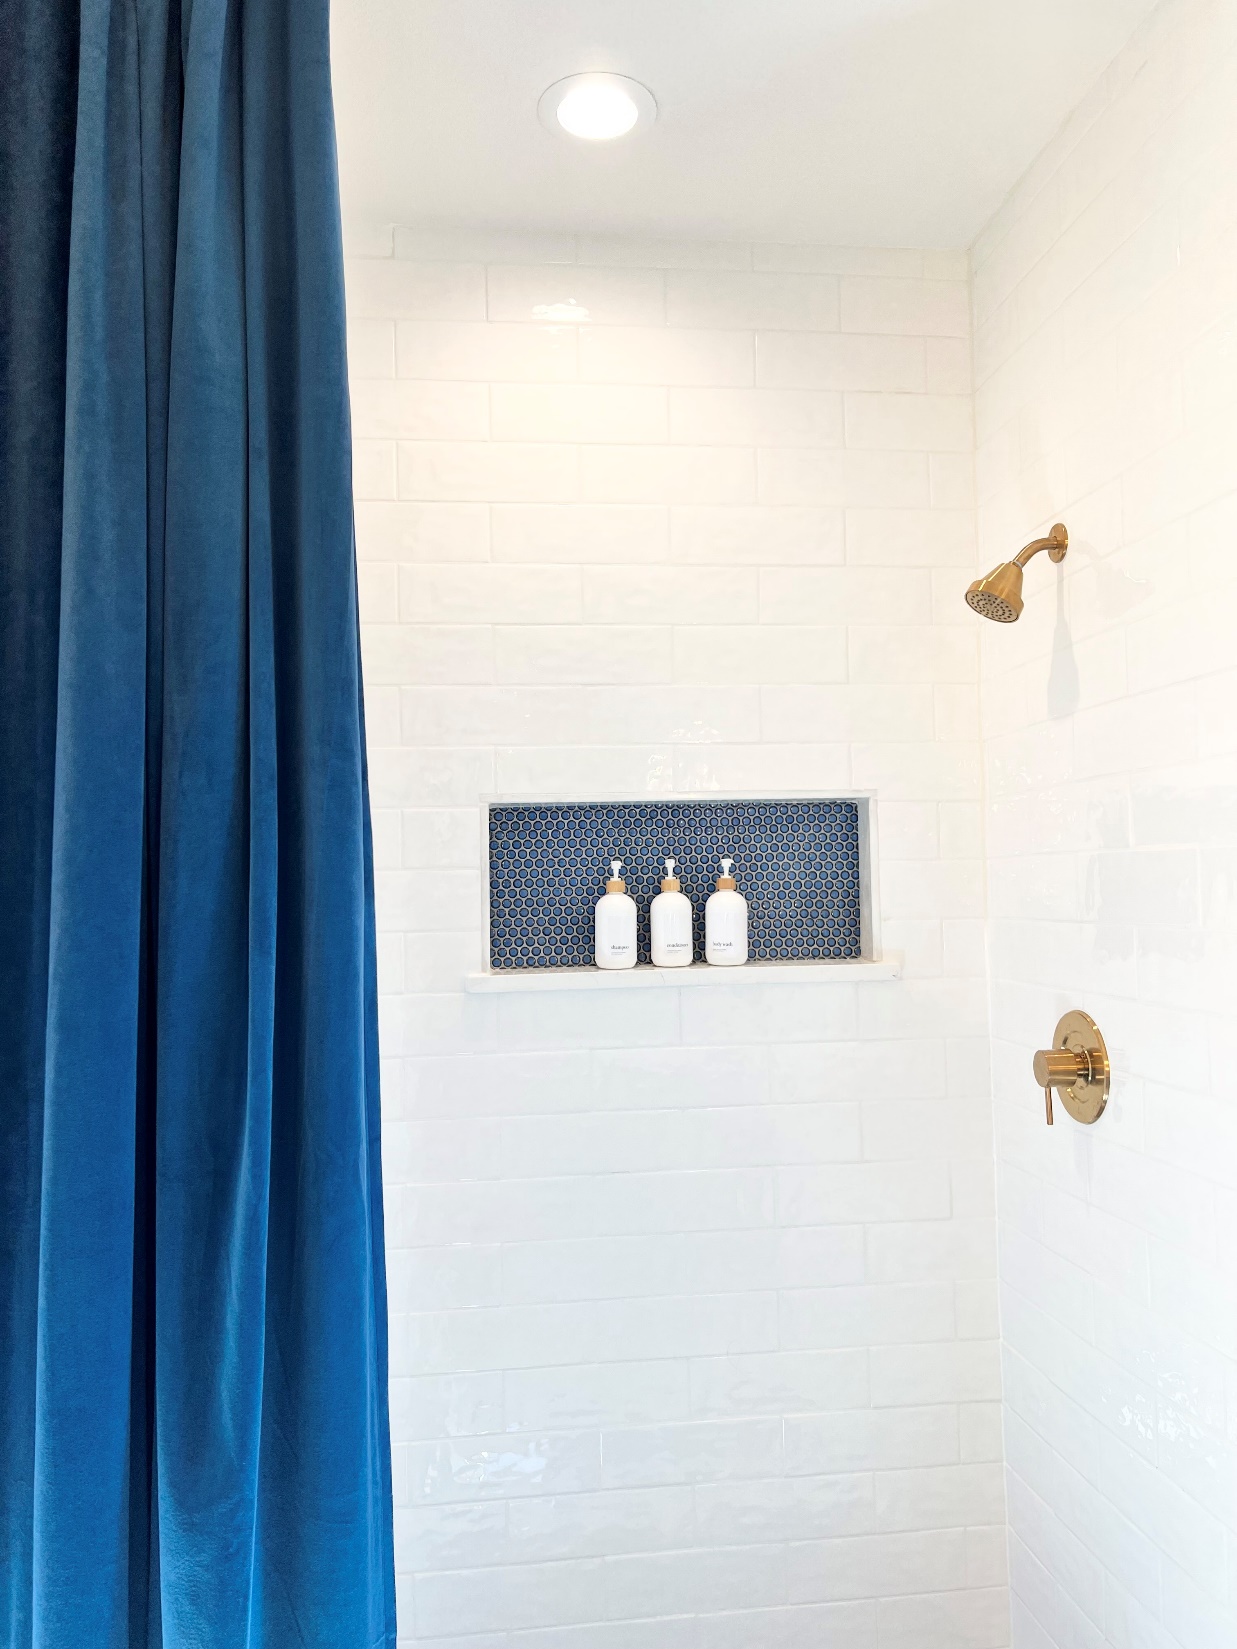 Guest bathroom interior design by San Antonio Interior designer Revive Design